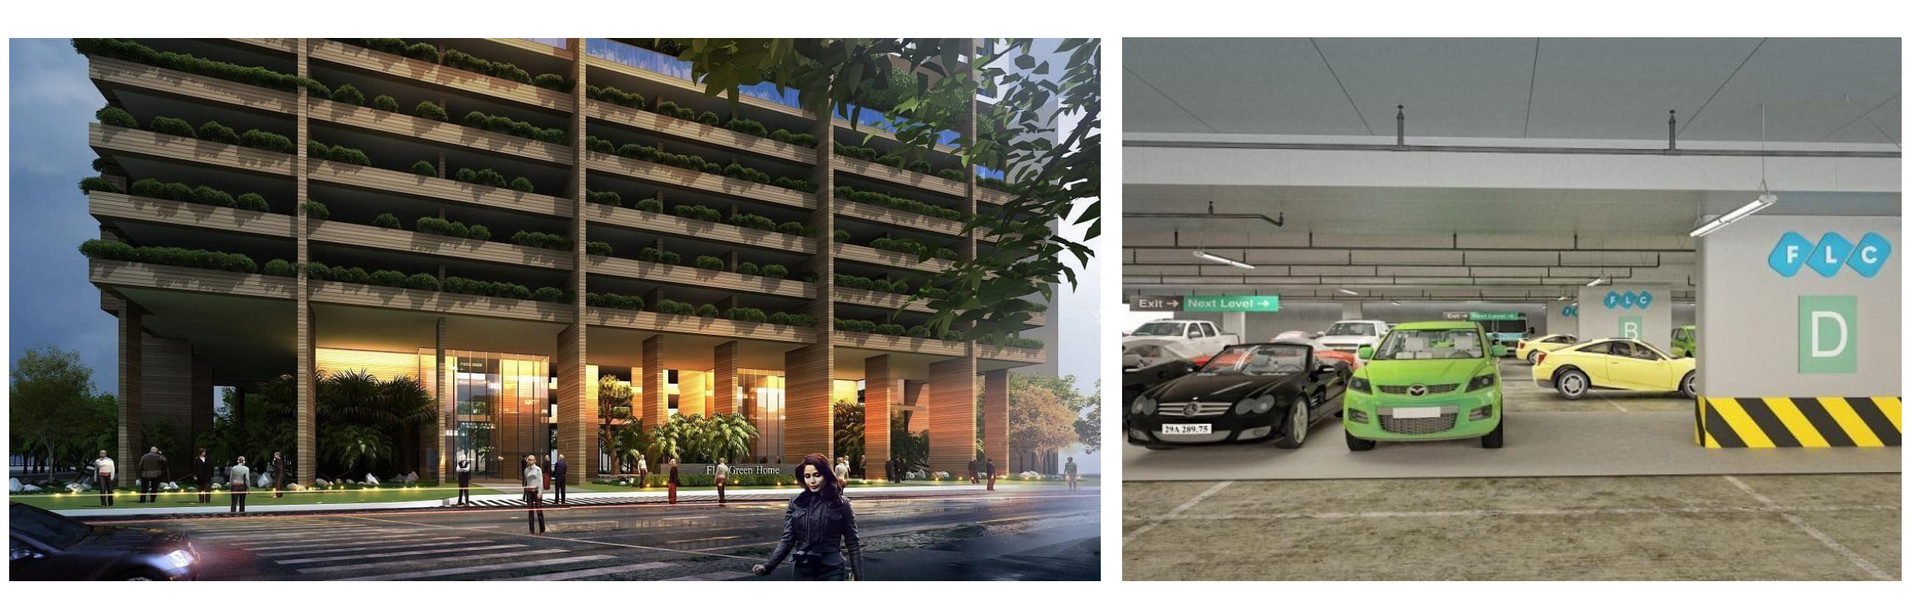 Khu đỗ xe thông minh - Thiết kế độc đáo trong dự án nghìn tỷ FLC Green Apartment